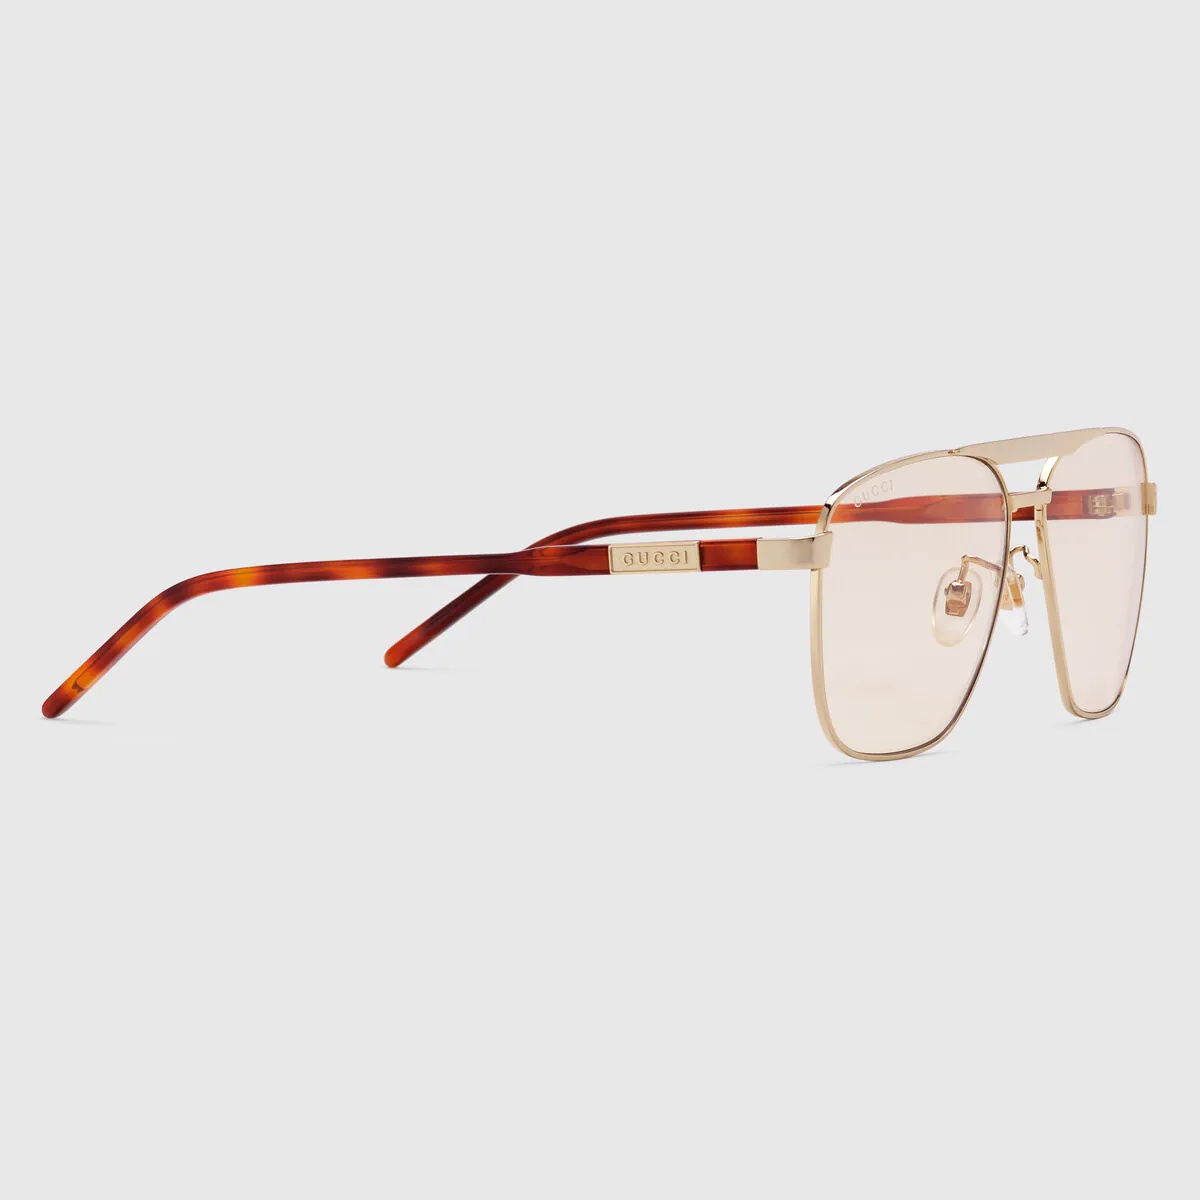 Navigator-frame sunglasses - 2